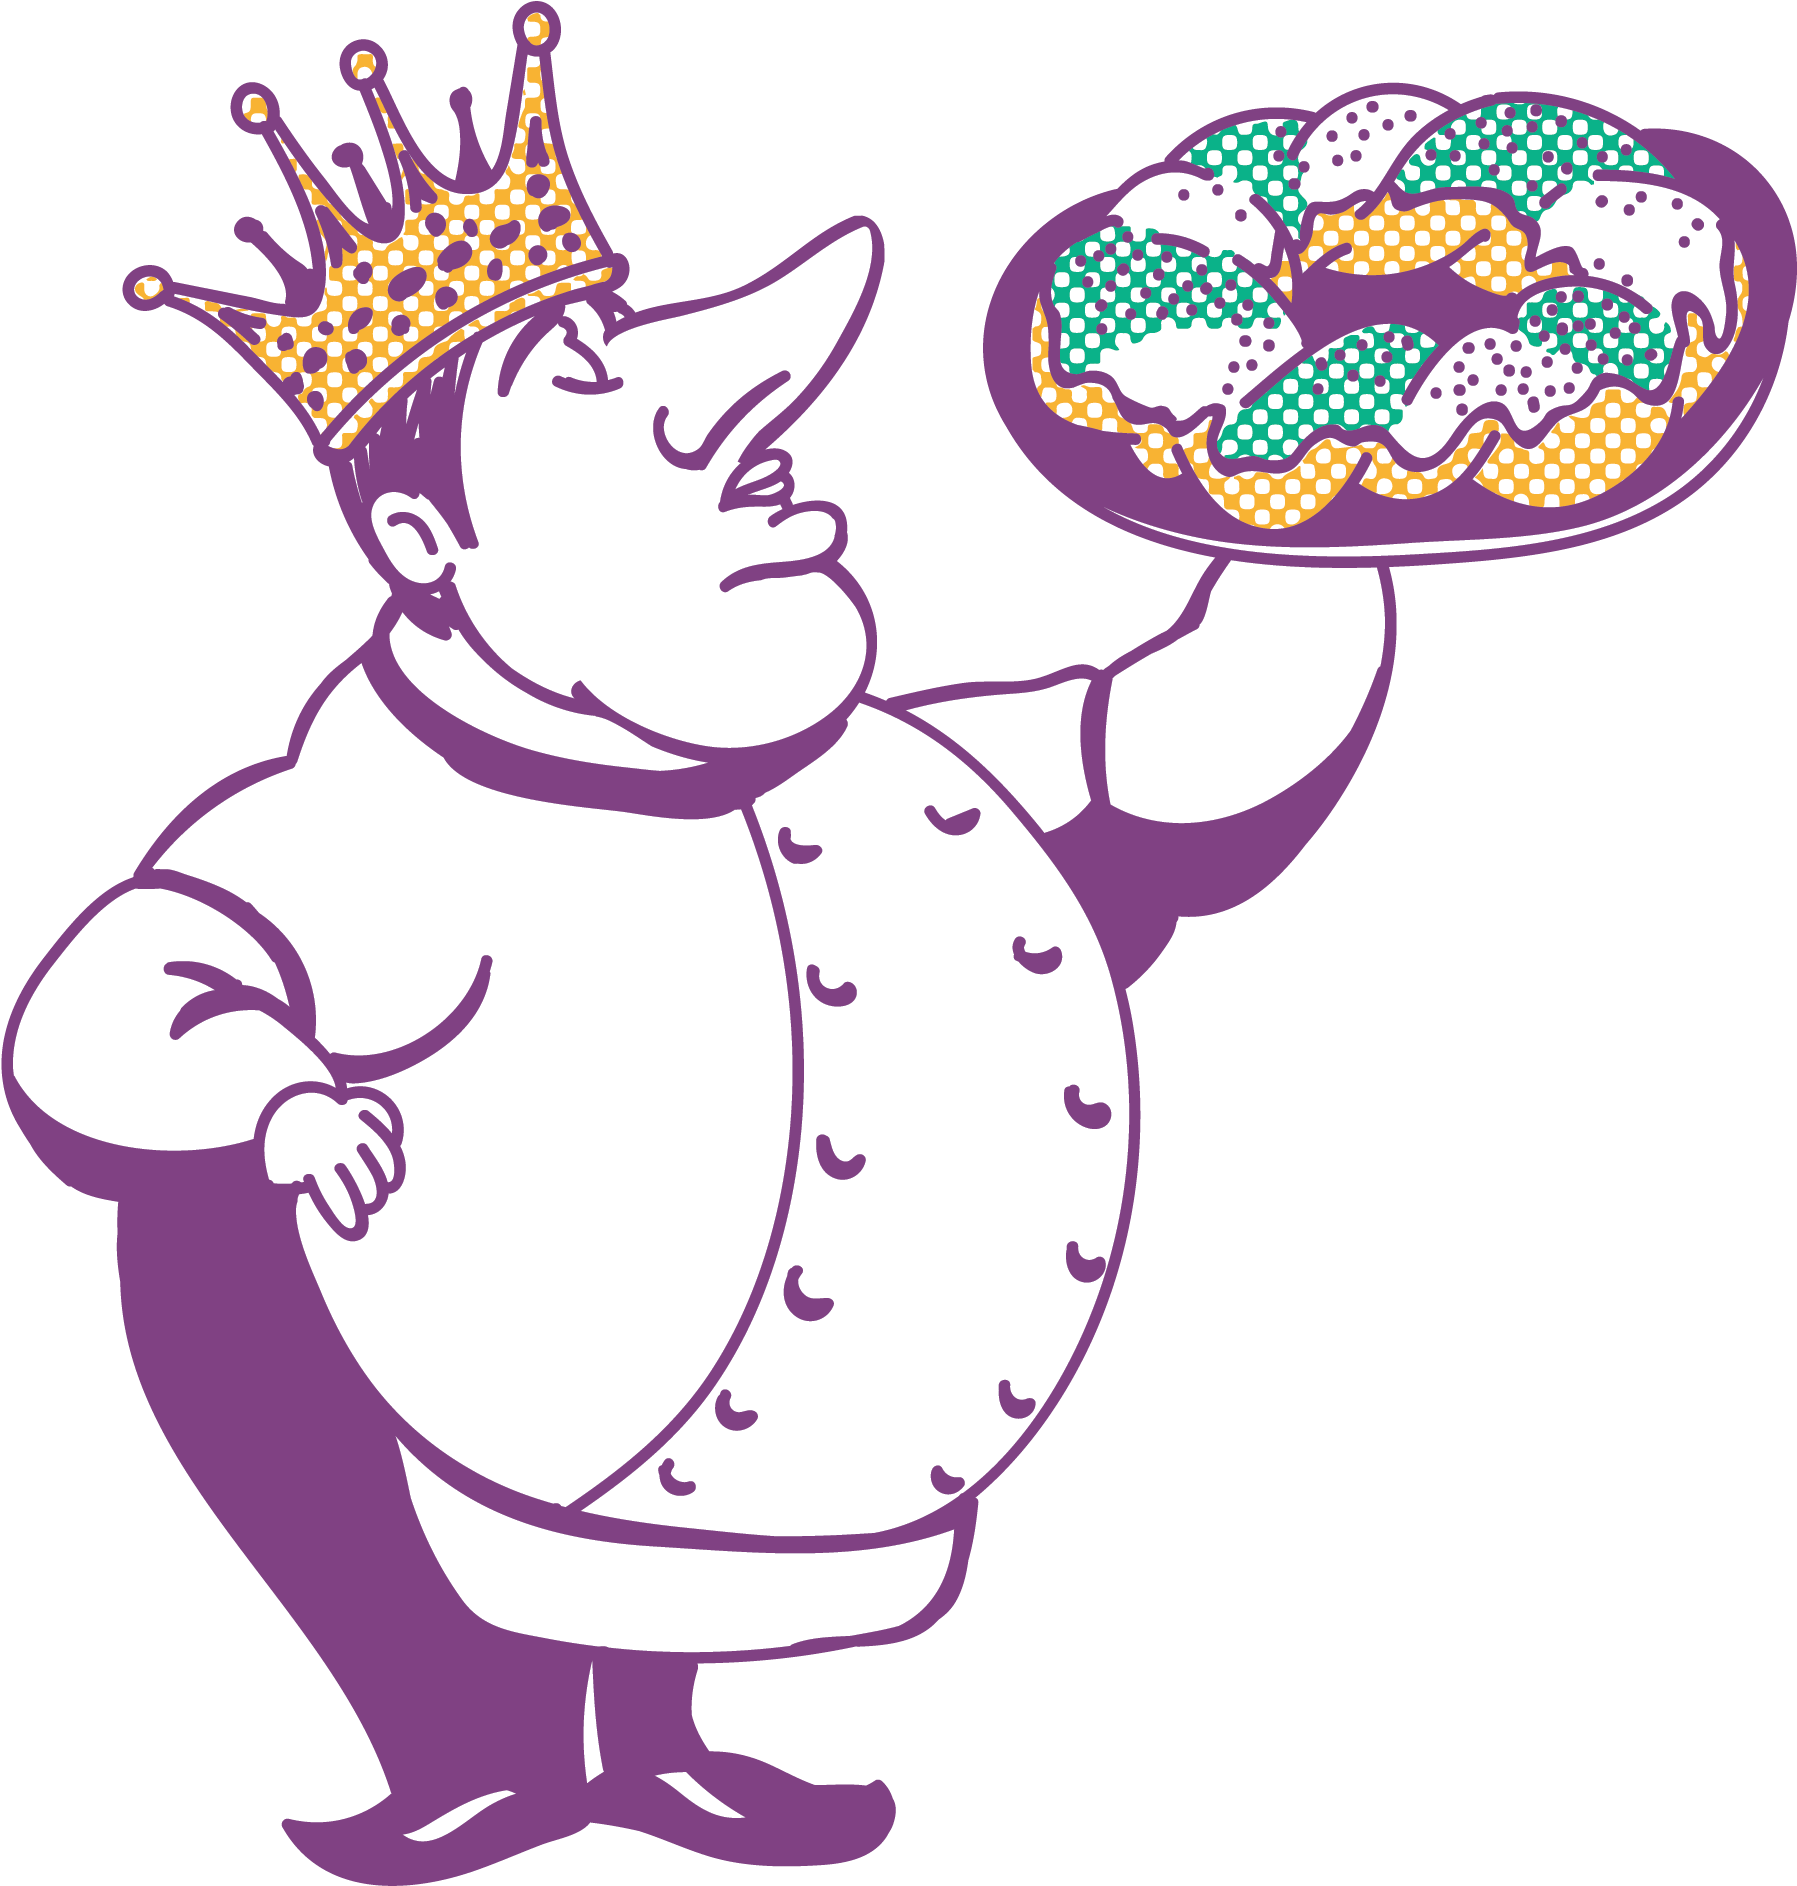 Snob Logo - Png - 375kb - King Cake Snob (3300x2550)